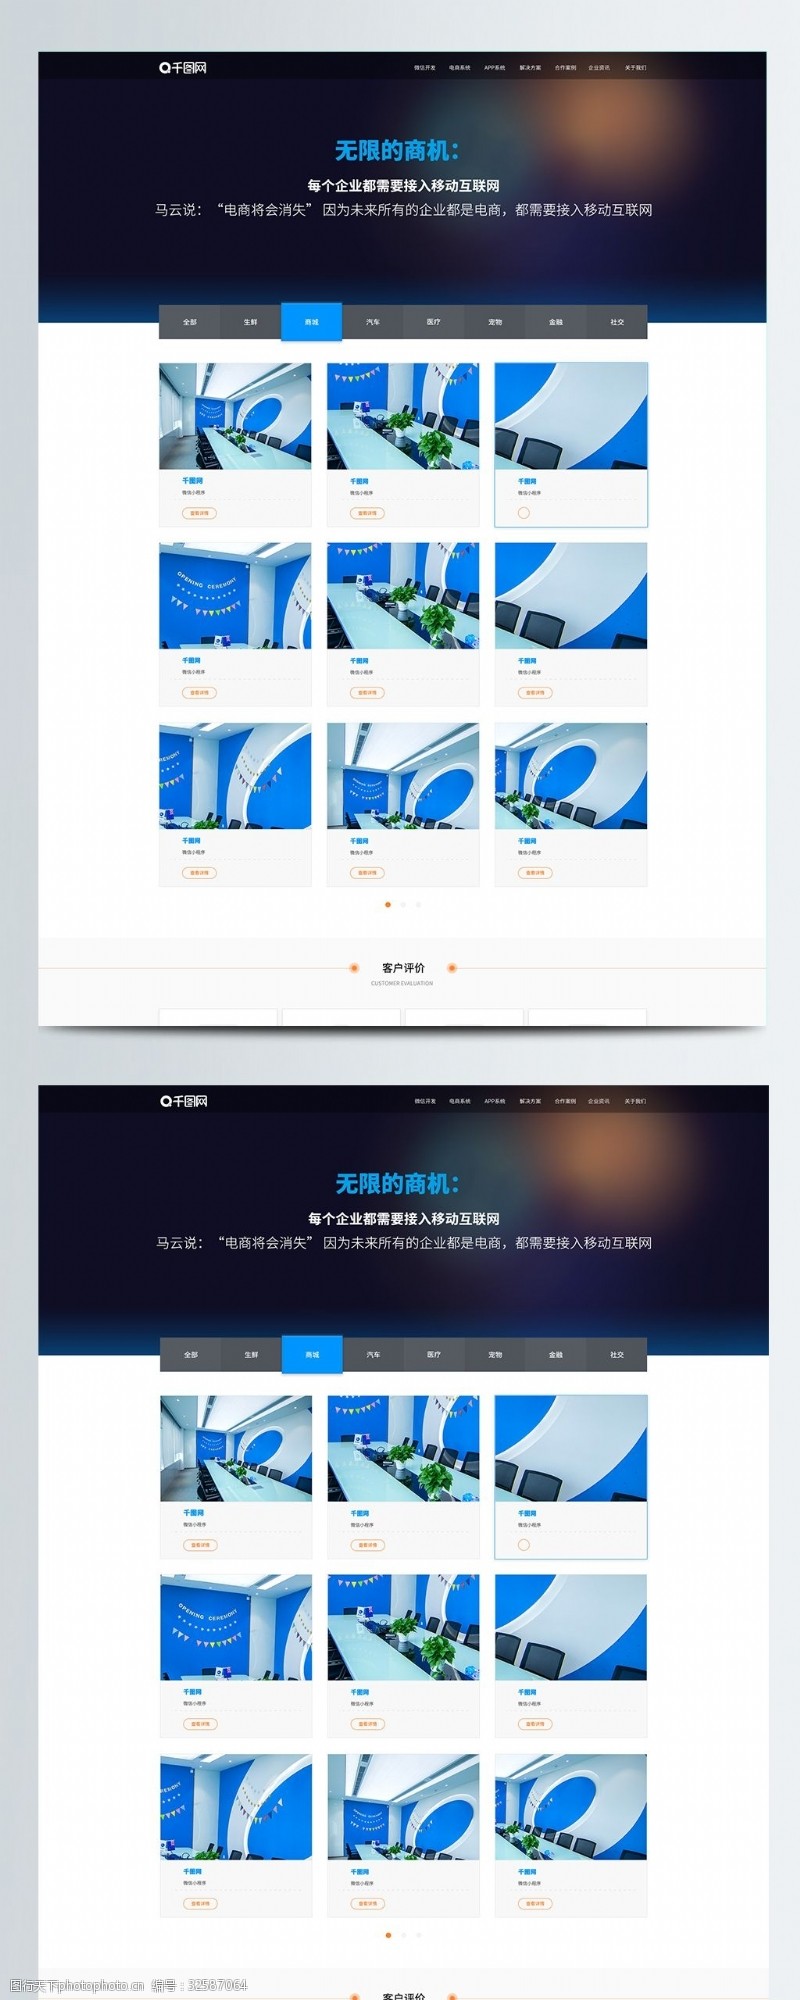 官方企业网站蓝色科技互联网企业官方网站案例界面设计